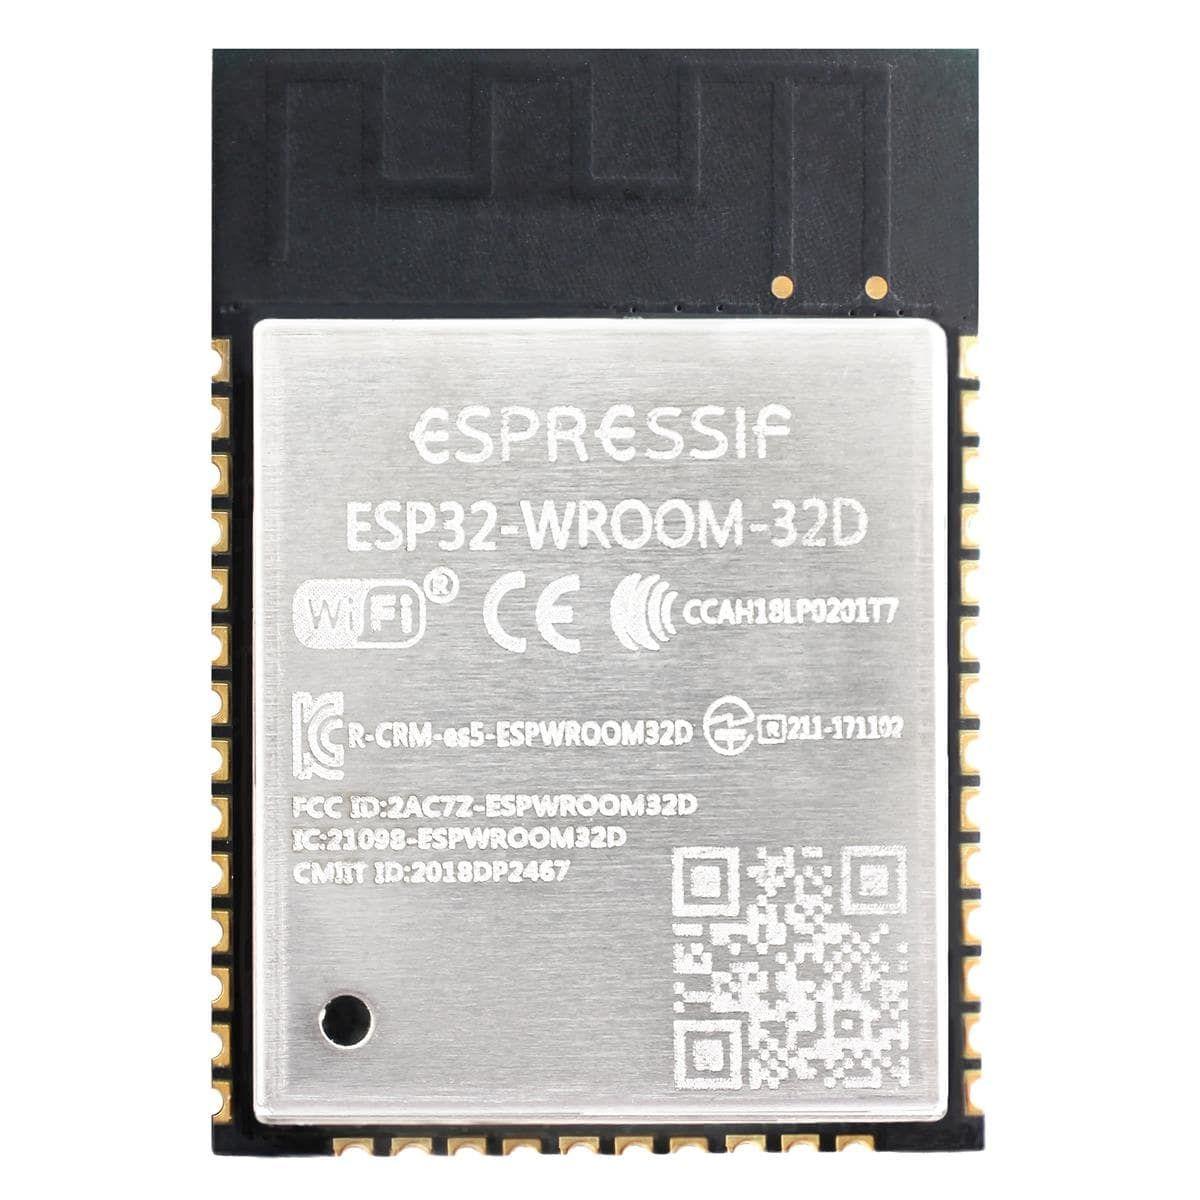 ESP32-WROOM-32D (ESP32-WROOM-32D-N4), ESPRESSIF Wi-Fi/BT BLE